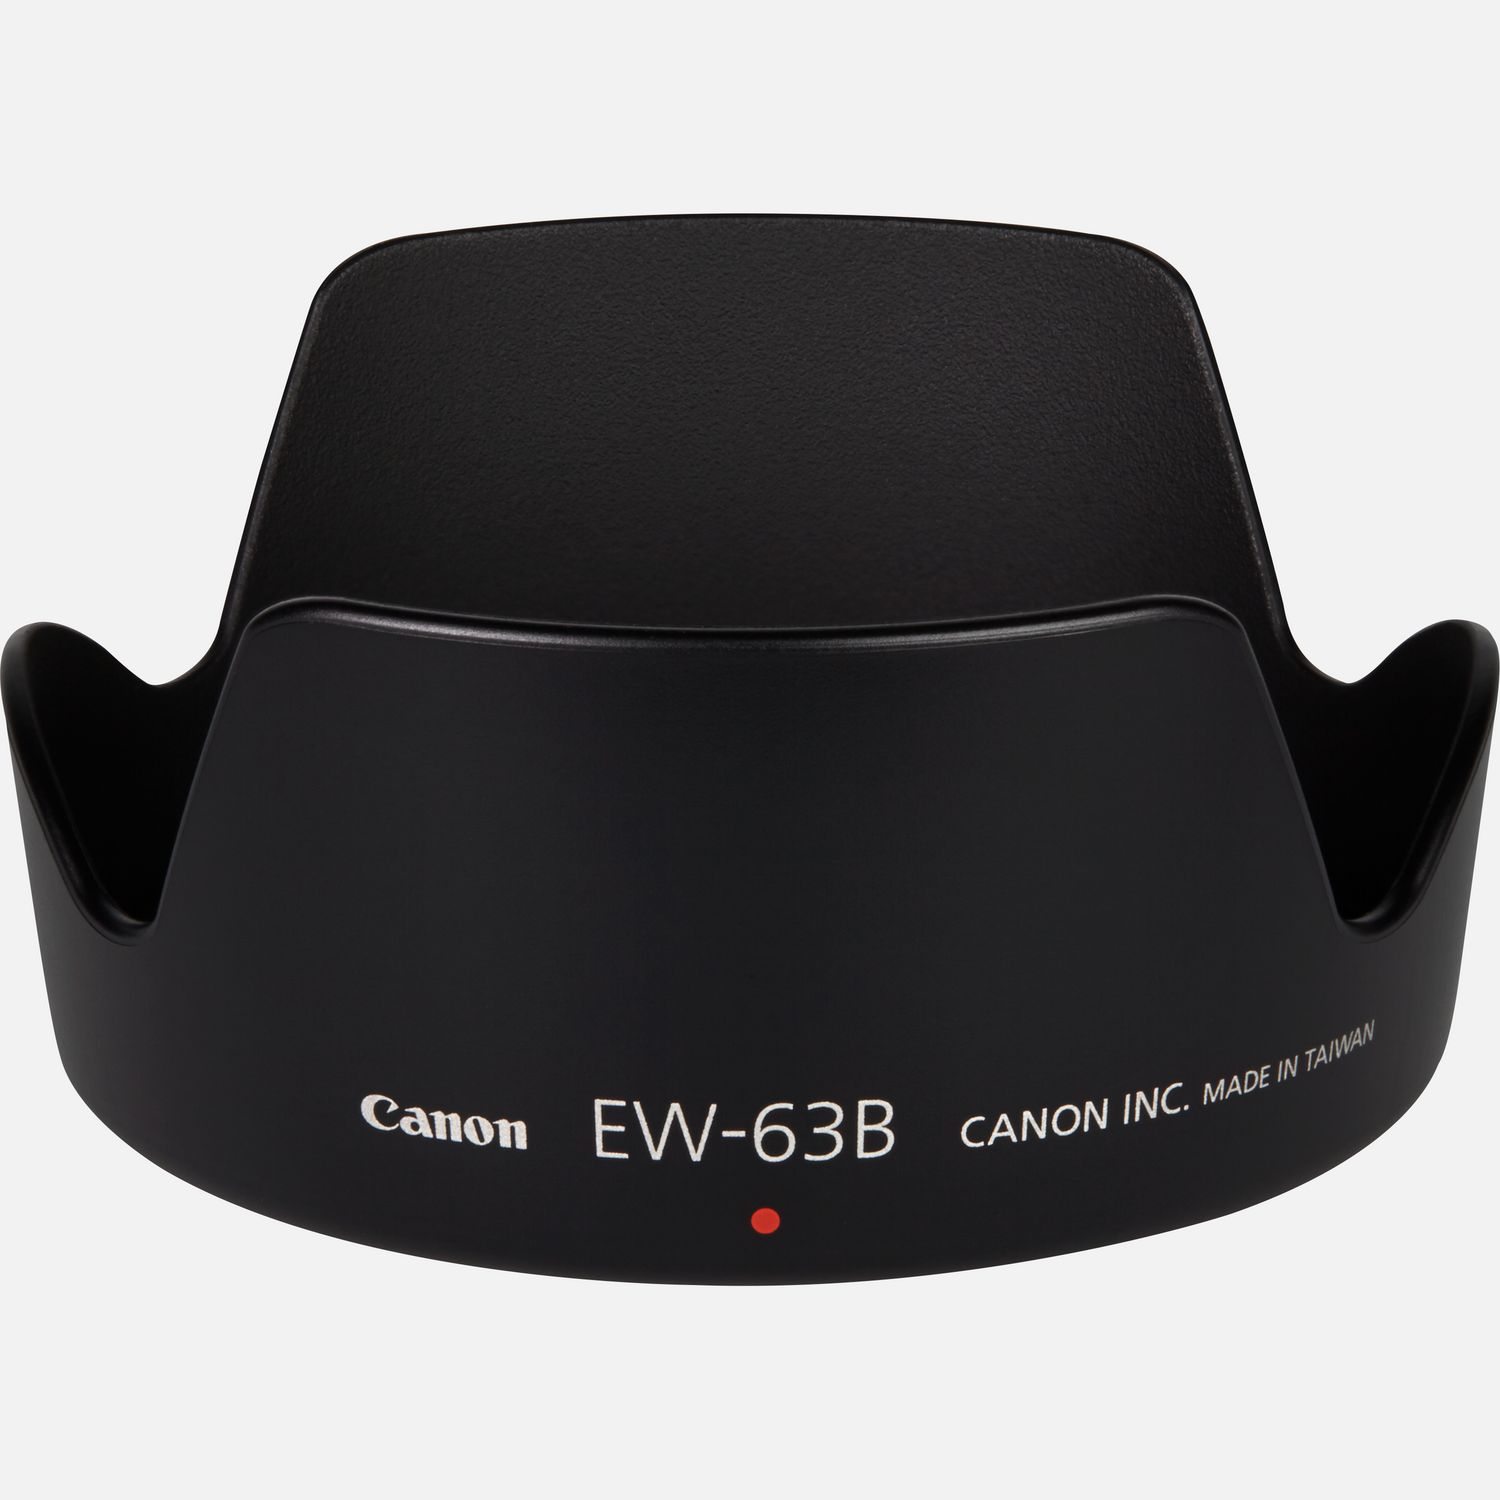 Passt auf das Objektiv EF 28-105mm 1:4-5,6 USM, reduziert Reflexionen, die durch direkt auf die Frontlinse auffallendes Licht hervorgerufen werden.